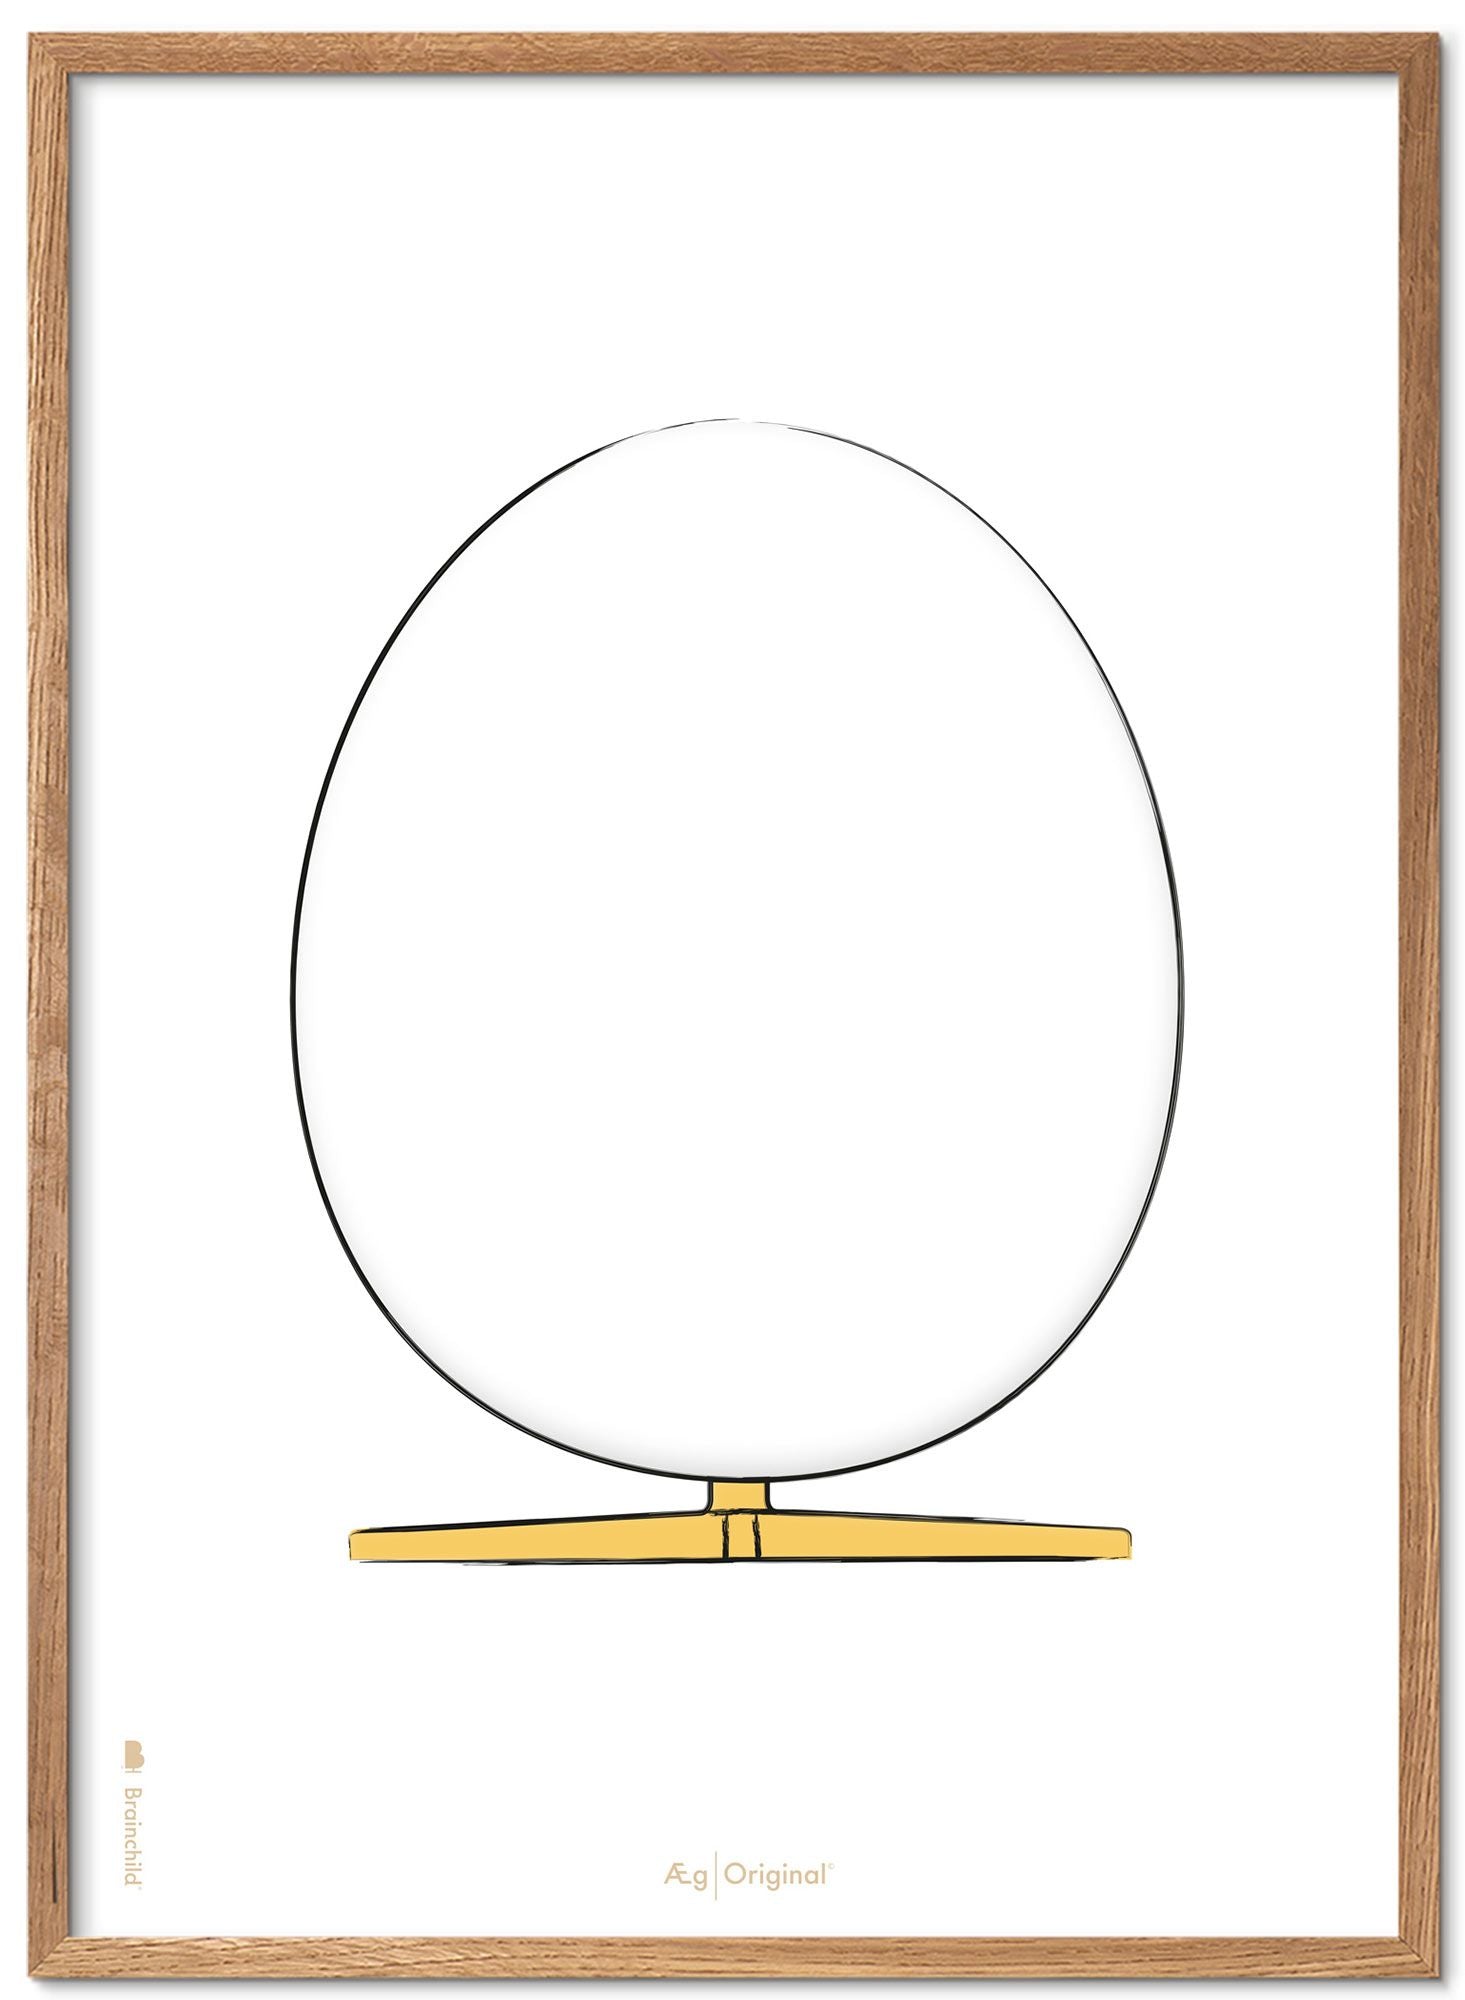 Prepare el marco de póster de boceto de diseño de huevo hecho de madera clara 50x70 cm, fondo blanco